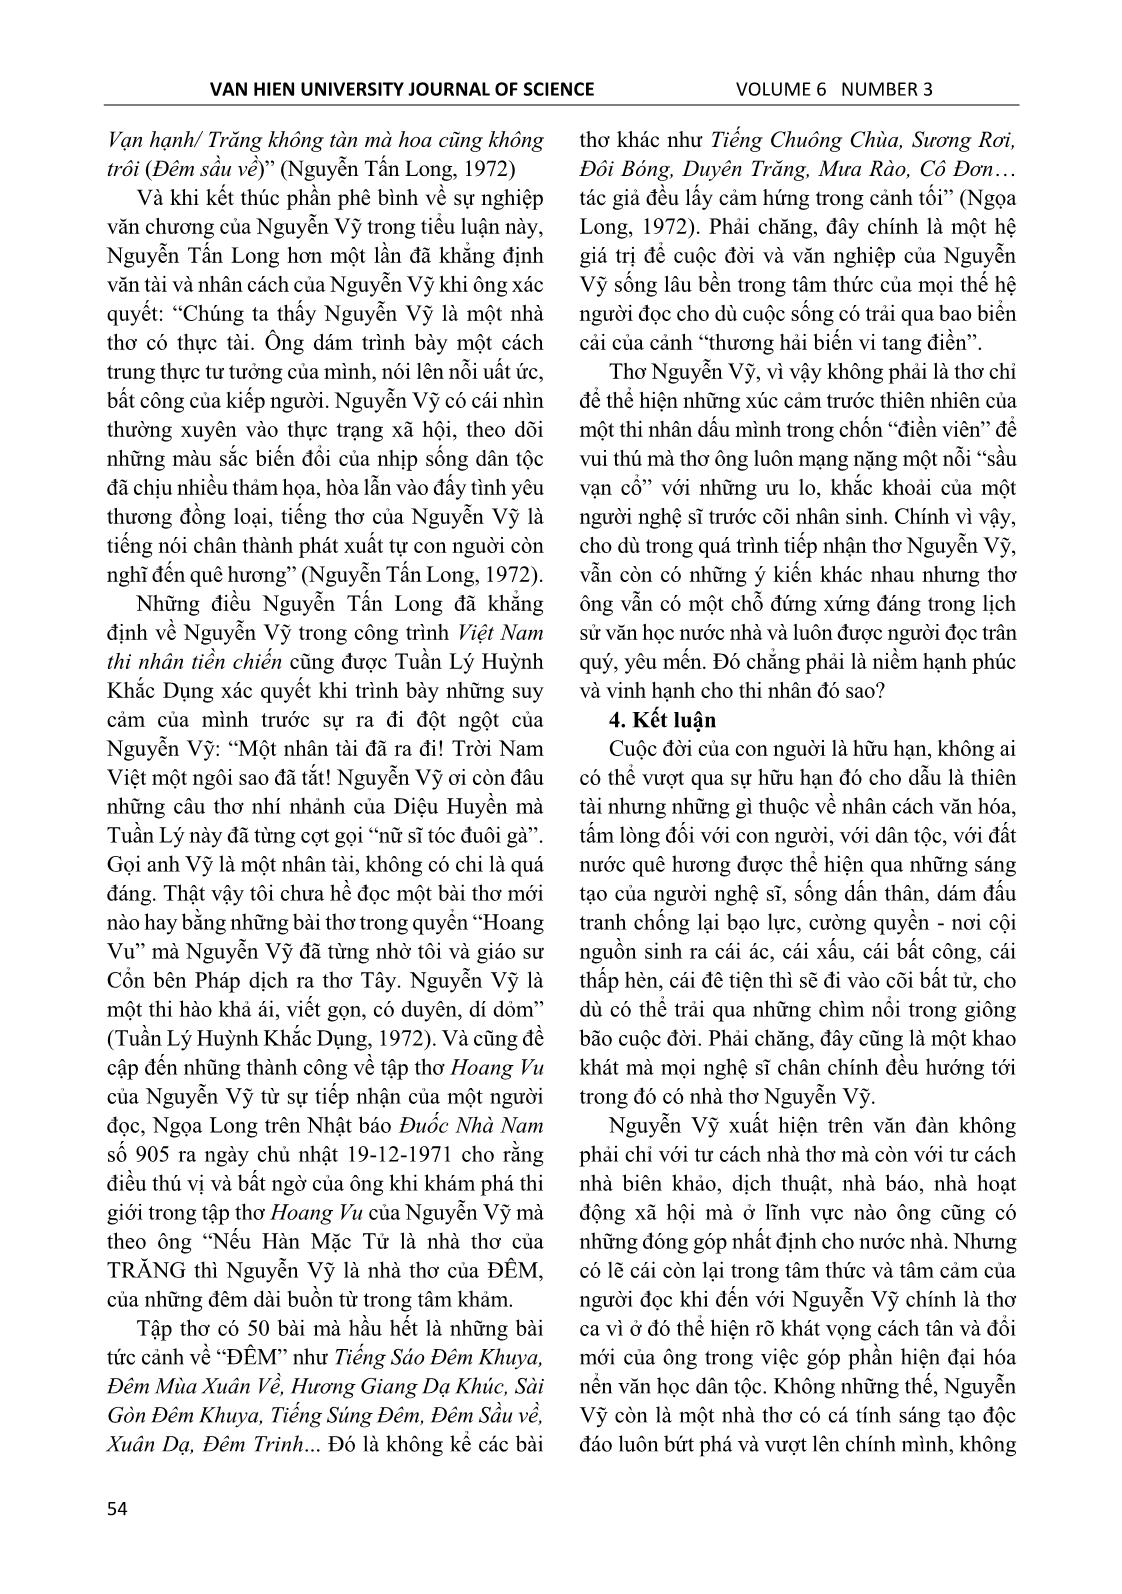 Thơ Nguyễn Vỹ trong tiếp nhận của phê bình văn học ở miền Nam giai đoạn 1954 – 1975 trang 6